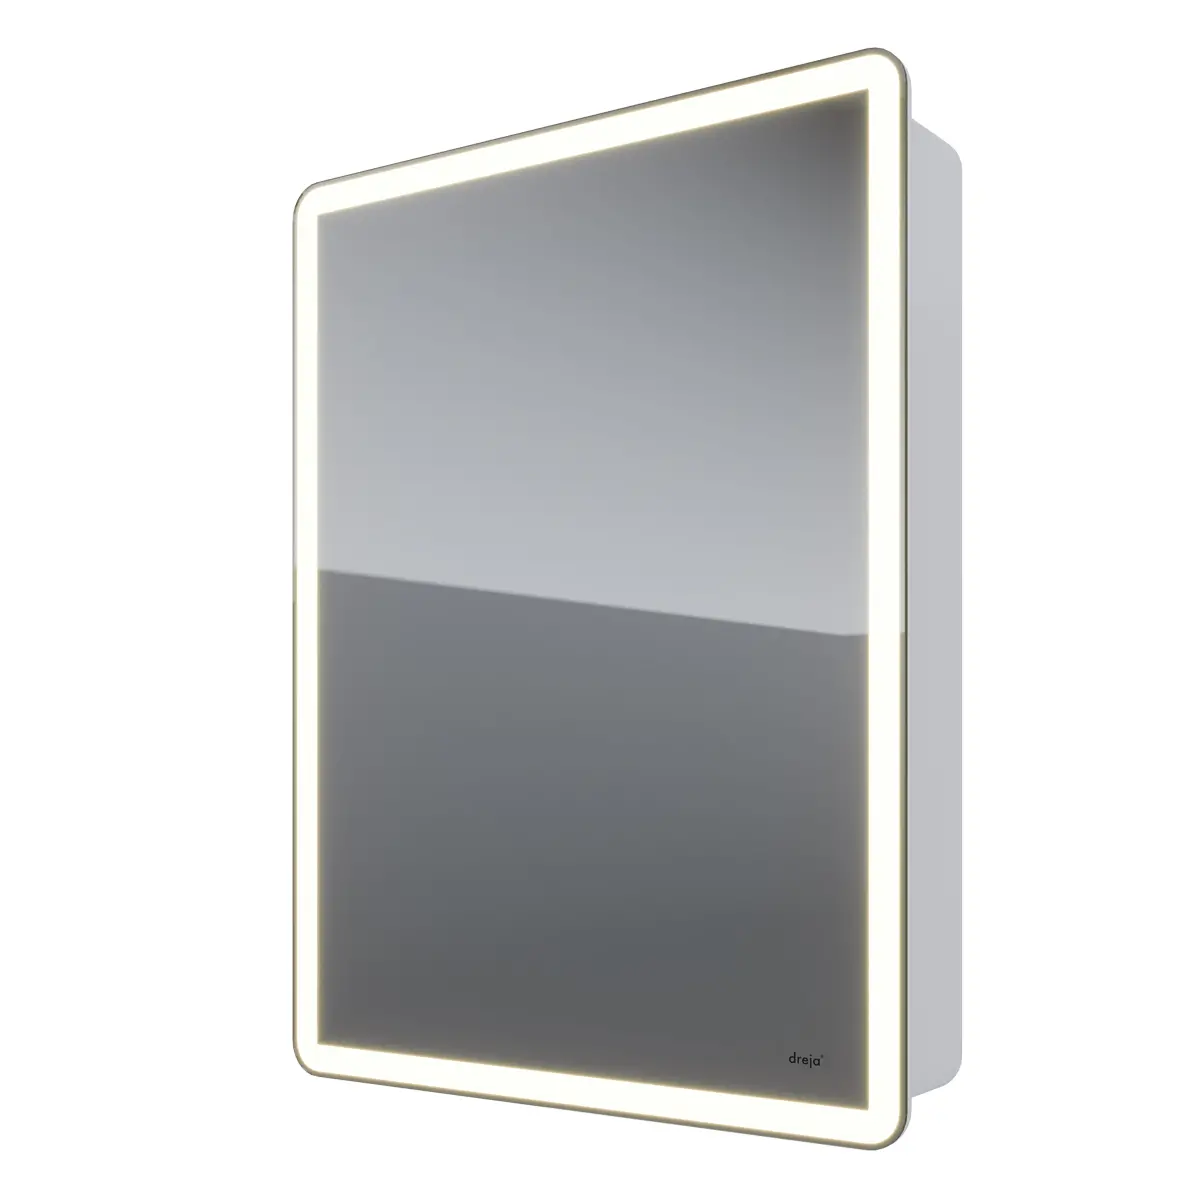 Зеркальный шкаф Dreja POINT, 60 см, 1 дв., 2 стекл.полки, инфр. выключатель, LED, розетка, белый